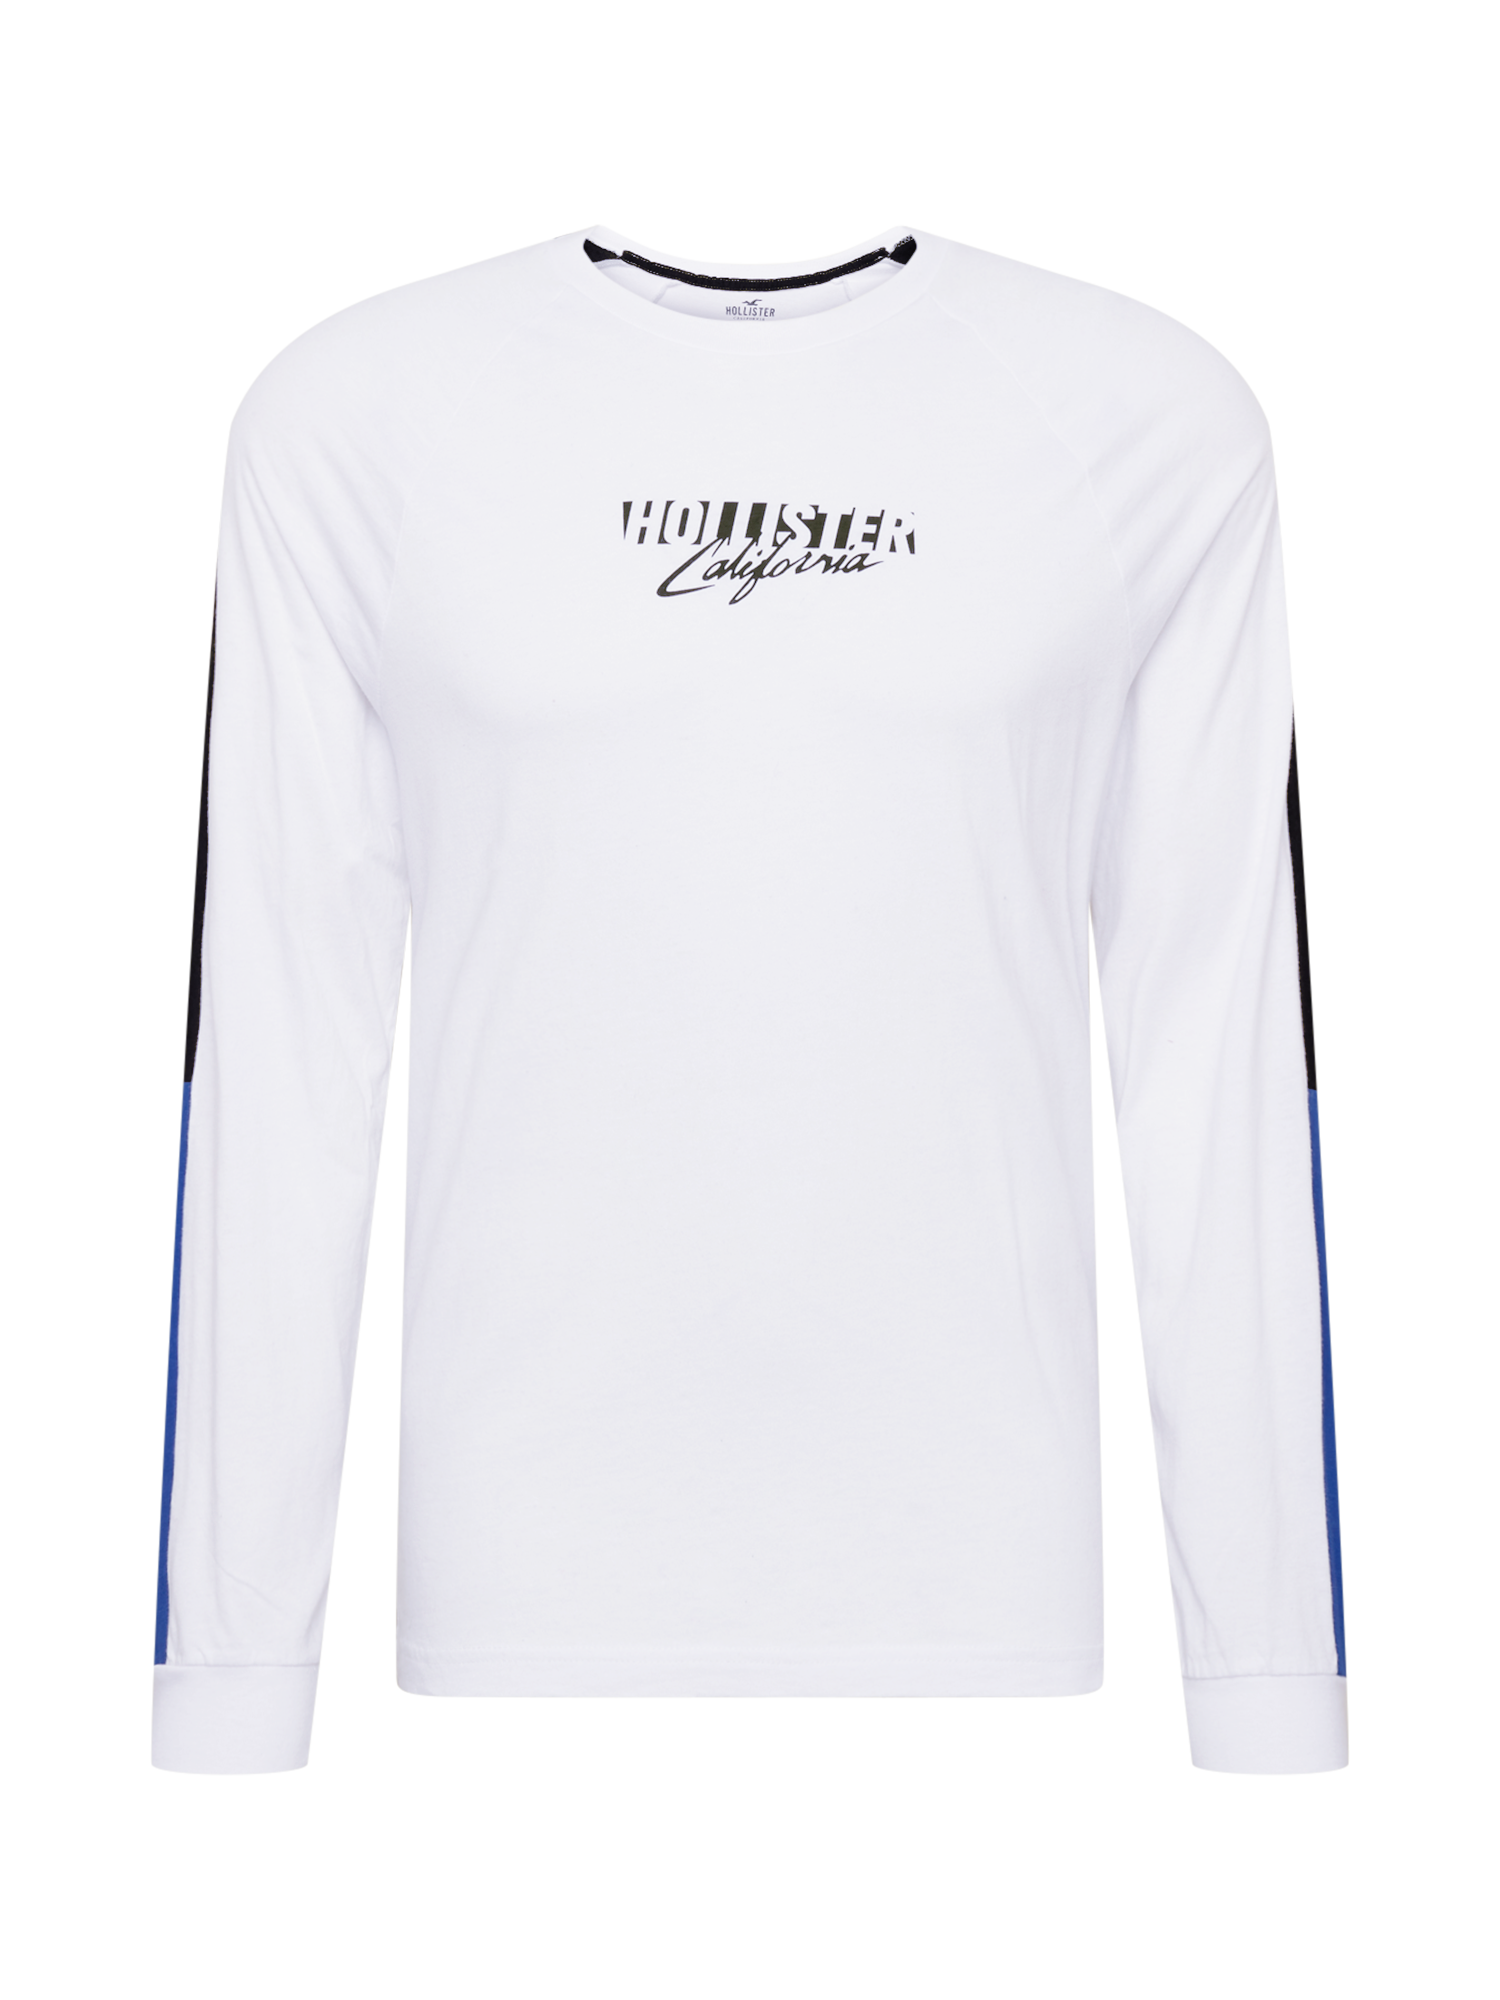 Odzież Mężczyźni HOLLISTER Koszulka w kolorze Białym 